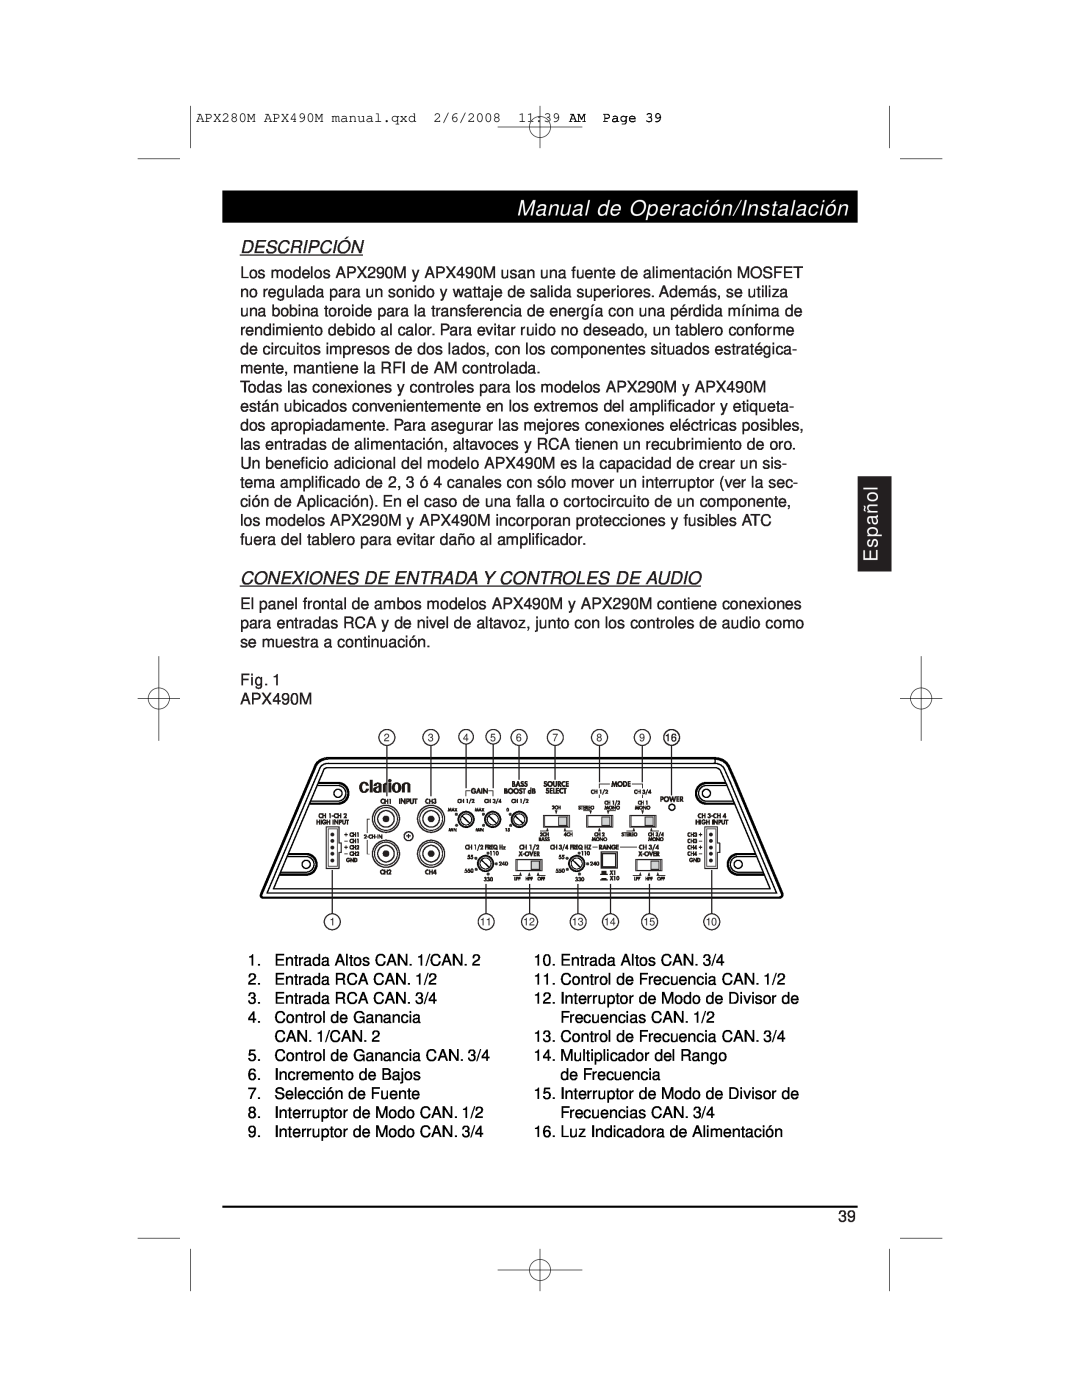 Clarion APX290M Manual de Operación/Instalación, Descripción, Conexiones De Entrada Y Controles De Audio, Español 